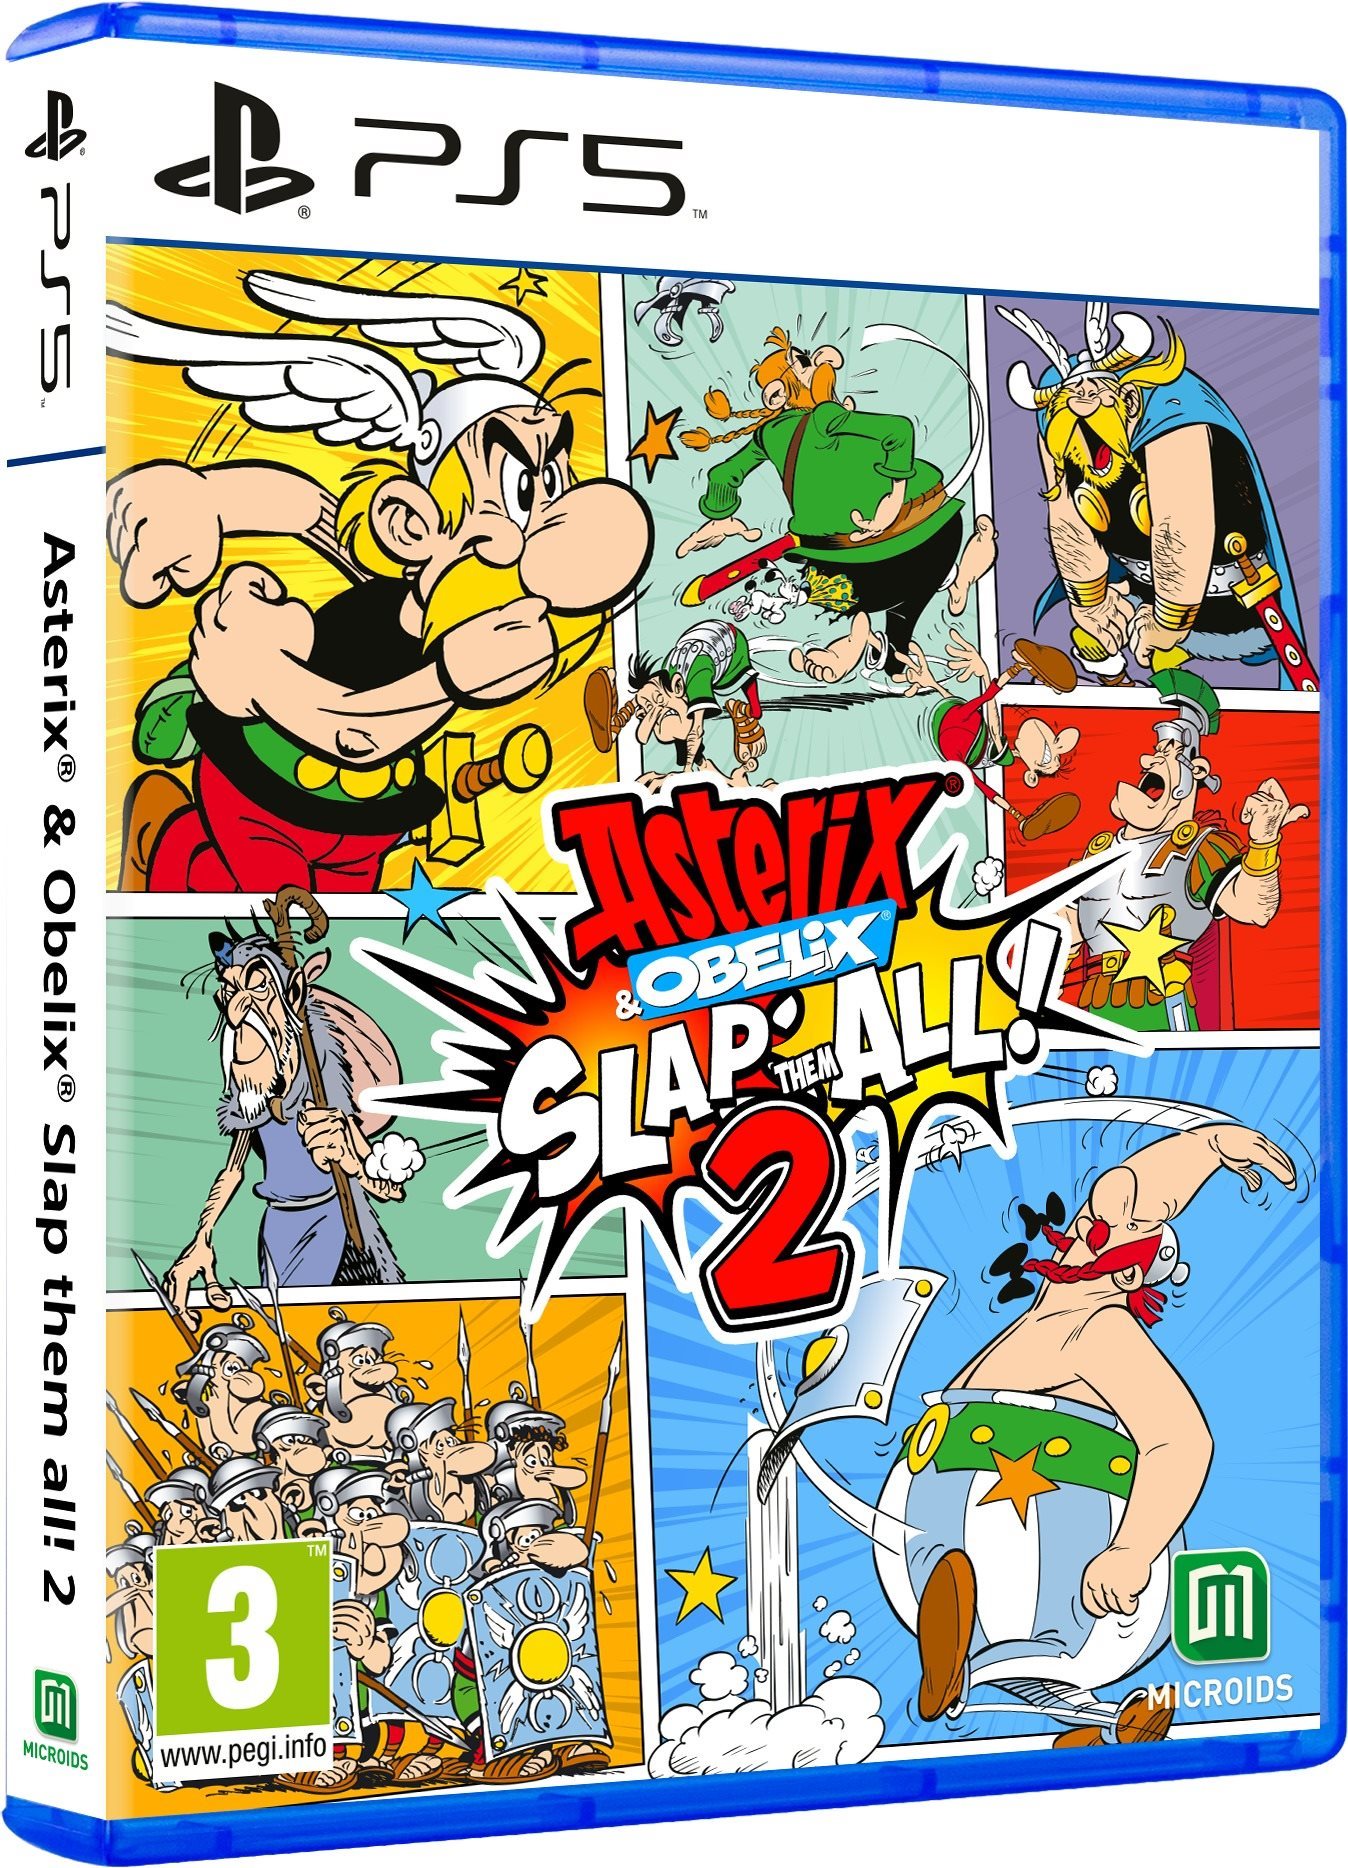 Asterix and Obelix: Slap Them All! 2 - PS5